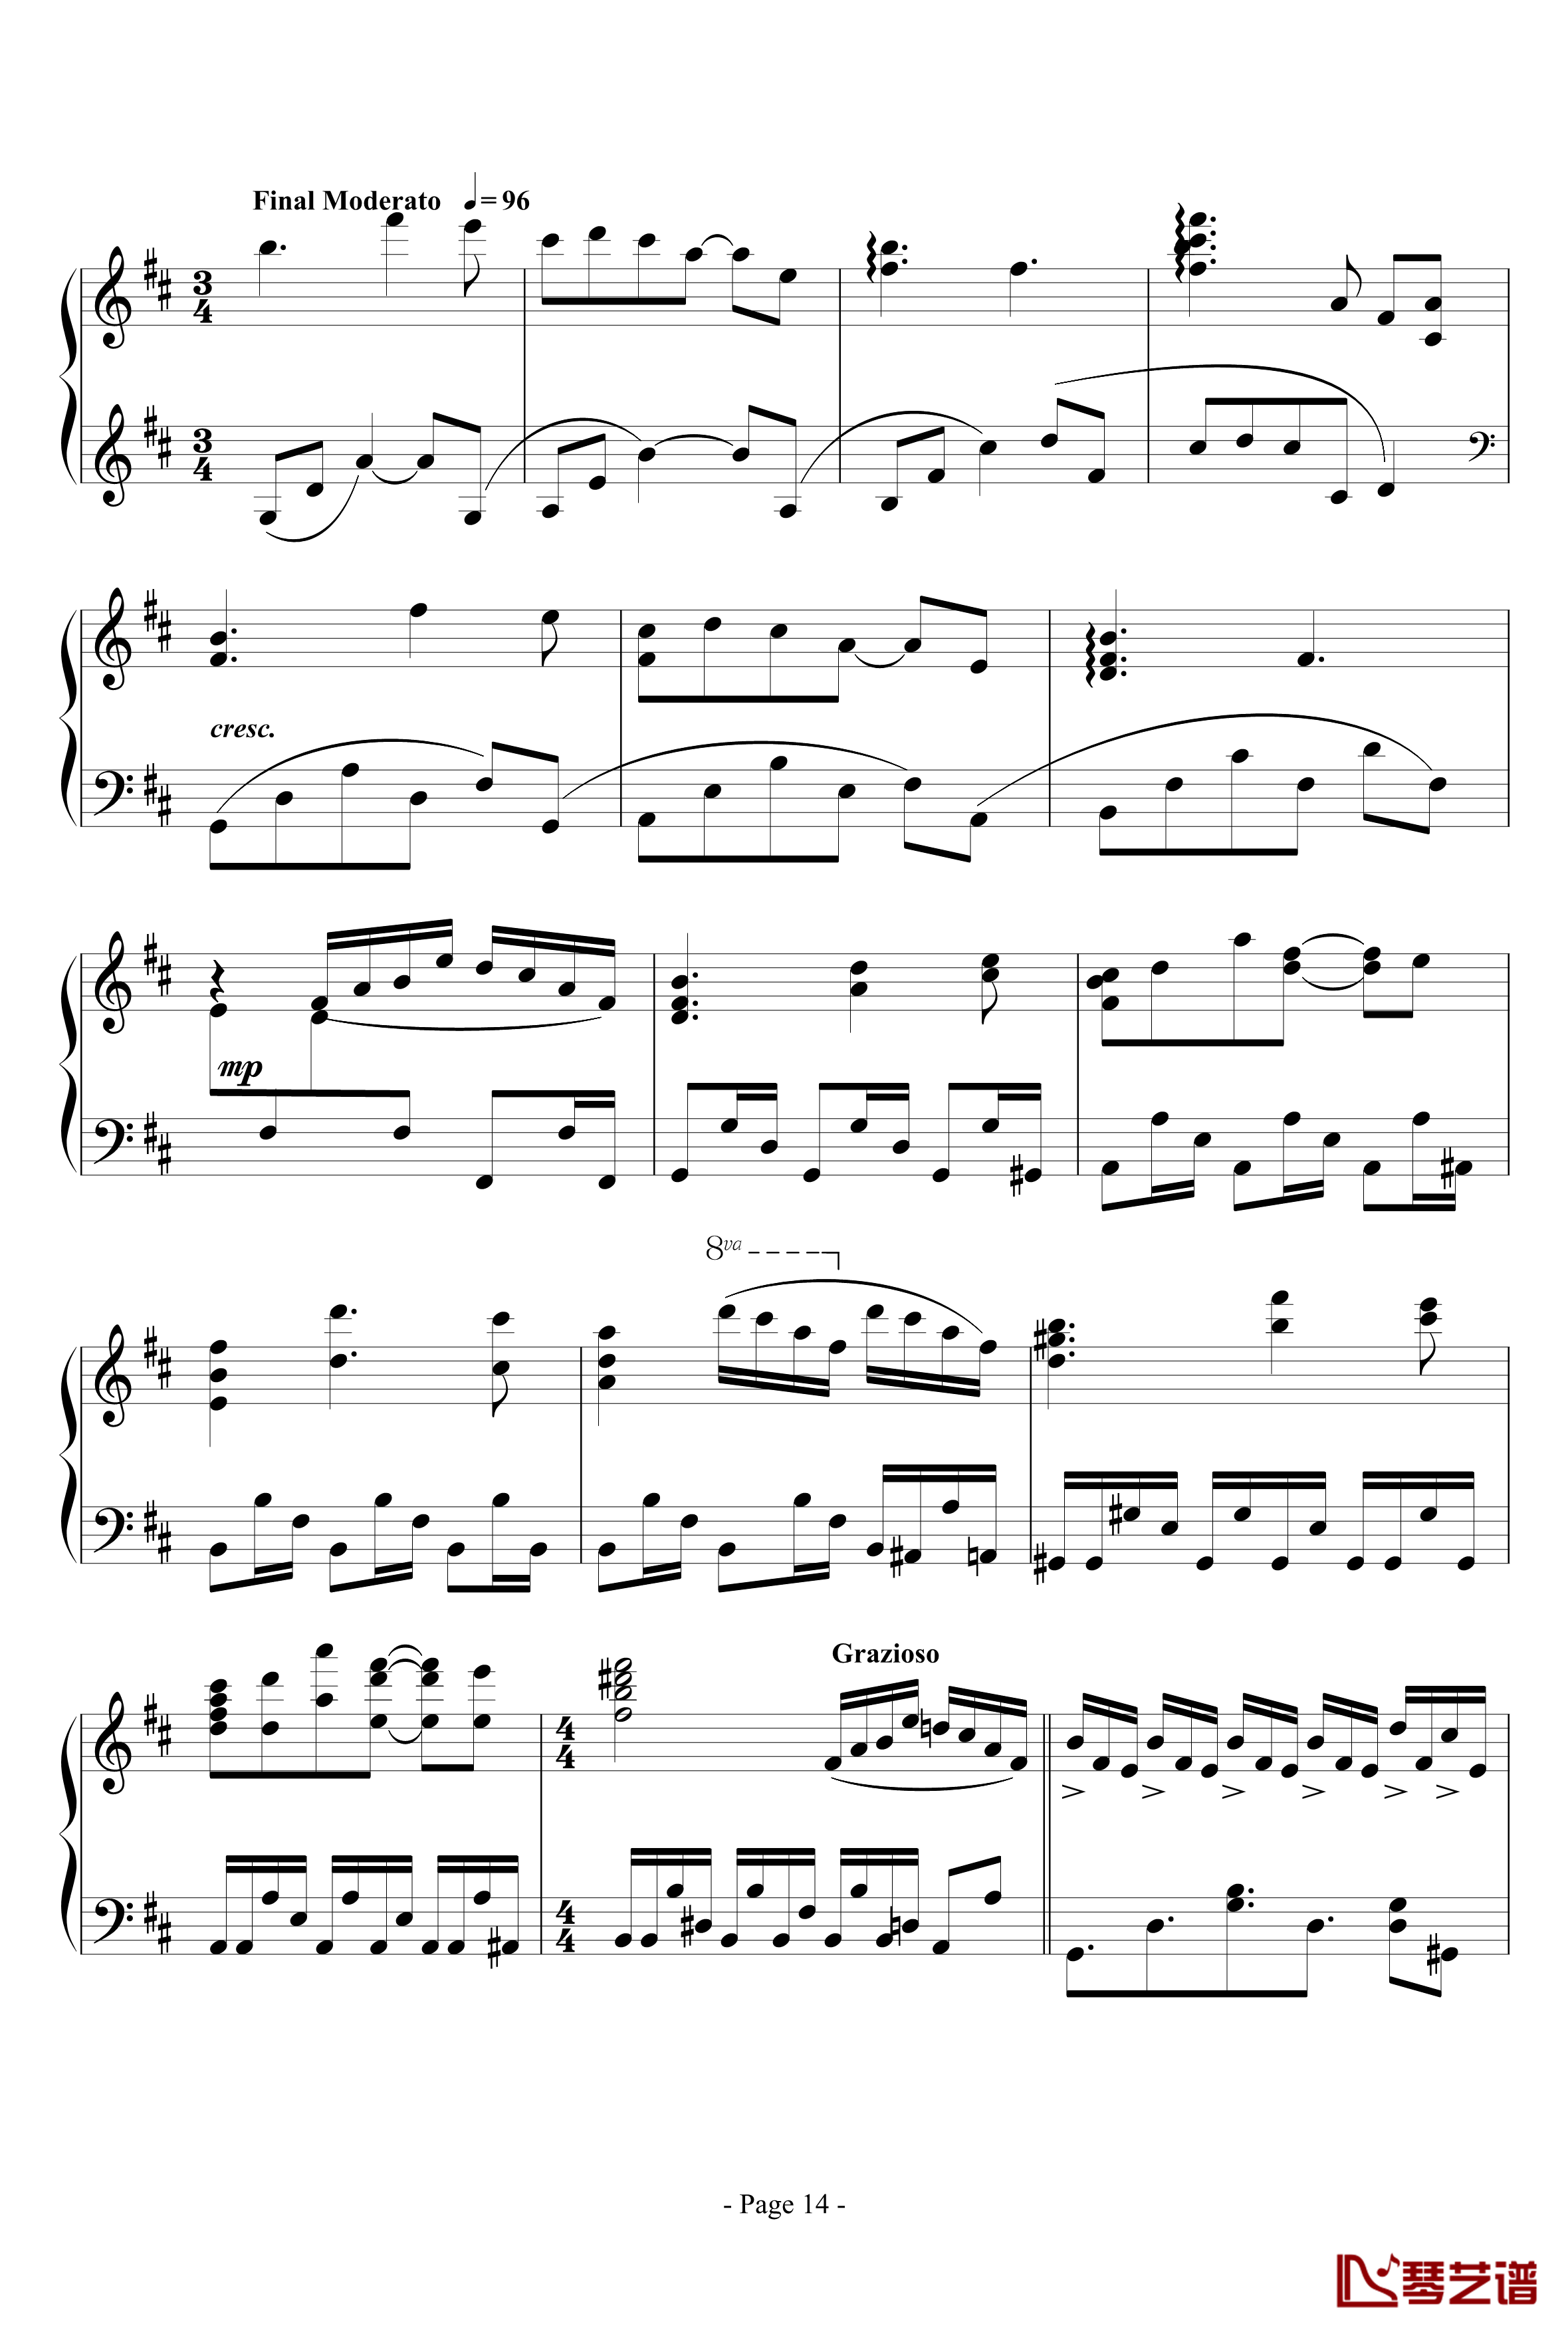 思绪之舞钢琴谱-lujianxiang55514